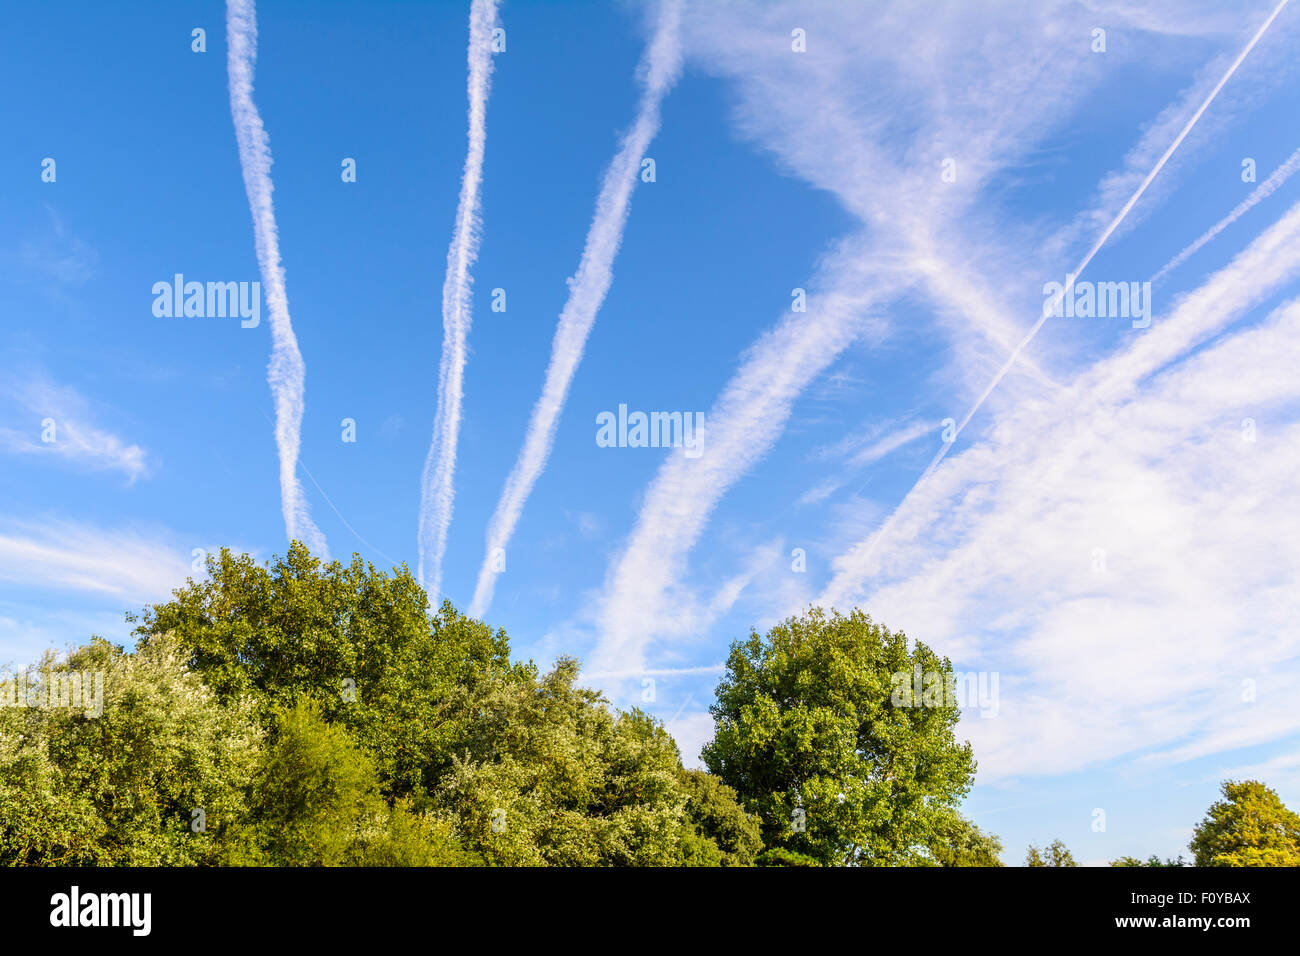 Traînées de condensation trails (vapeur) à partir de moteurs à réaction dans les avions, dans le ciel bleu. Des avions ou de la pollution de l'avion. Le réchauffement climatique. Banque D'Images